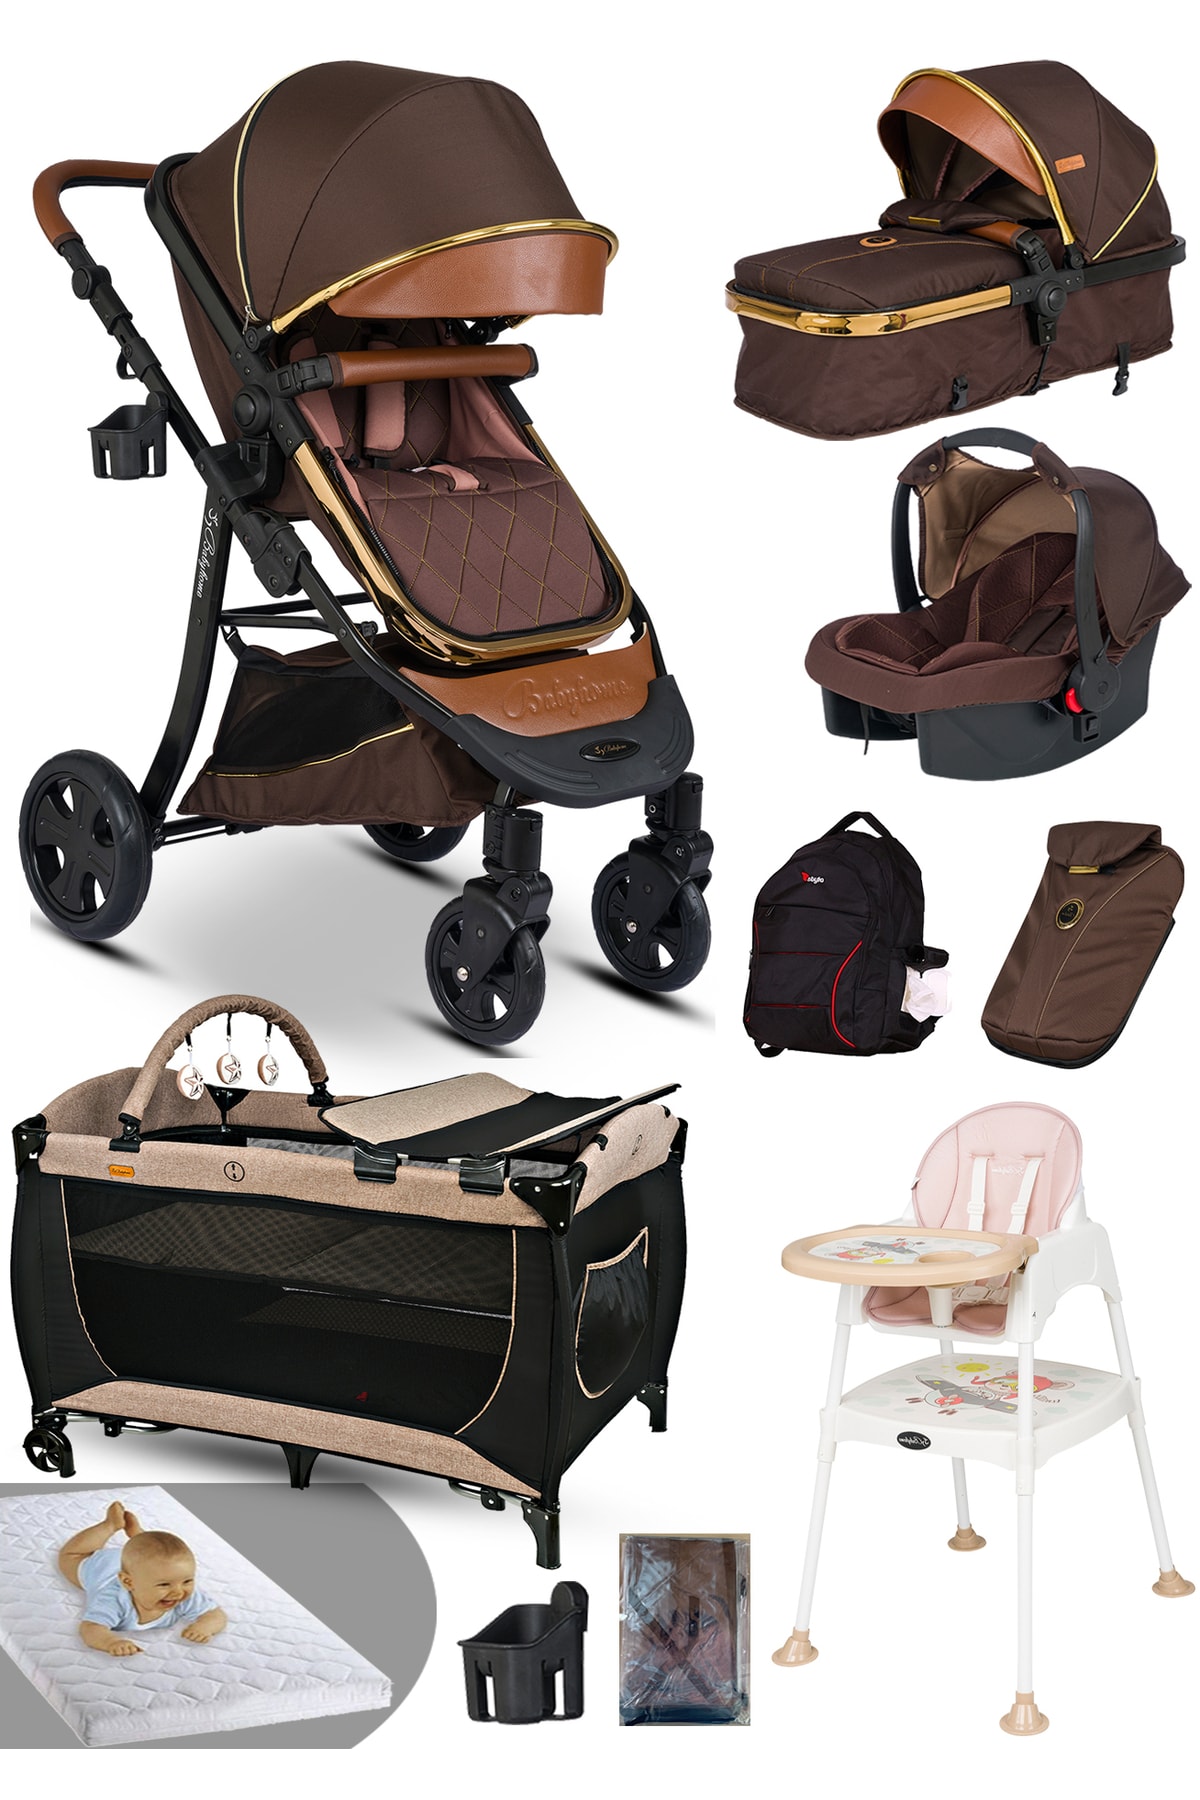 Baby Home Ekonomi Paket 10 In 1 985 Travel Sistem Bebek Arabası Oyun Parkı Yatak Beşik Mama Sandalyesi